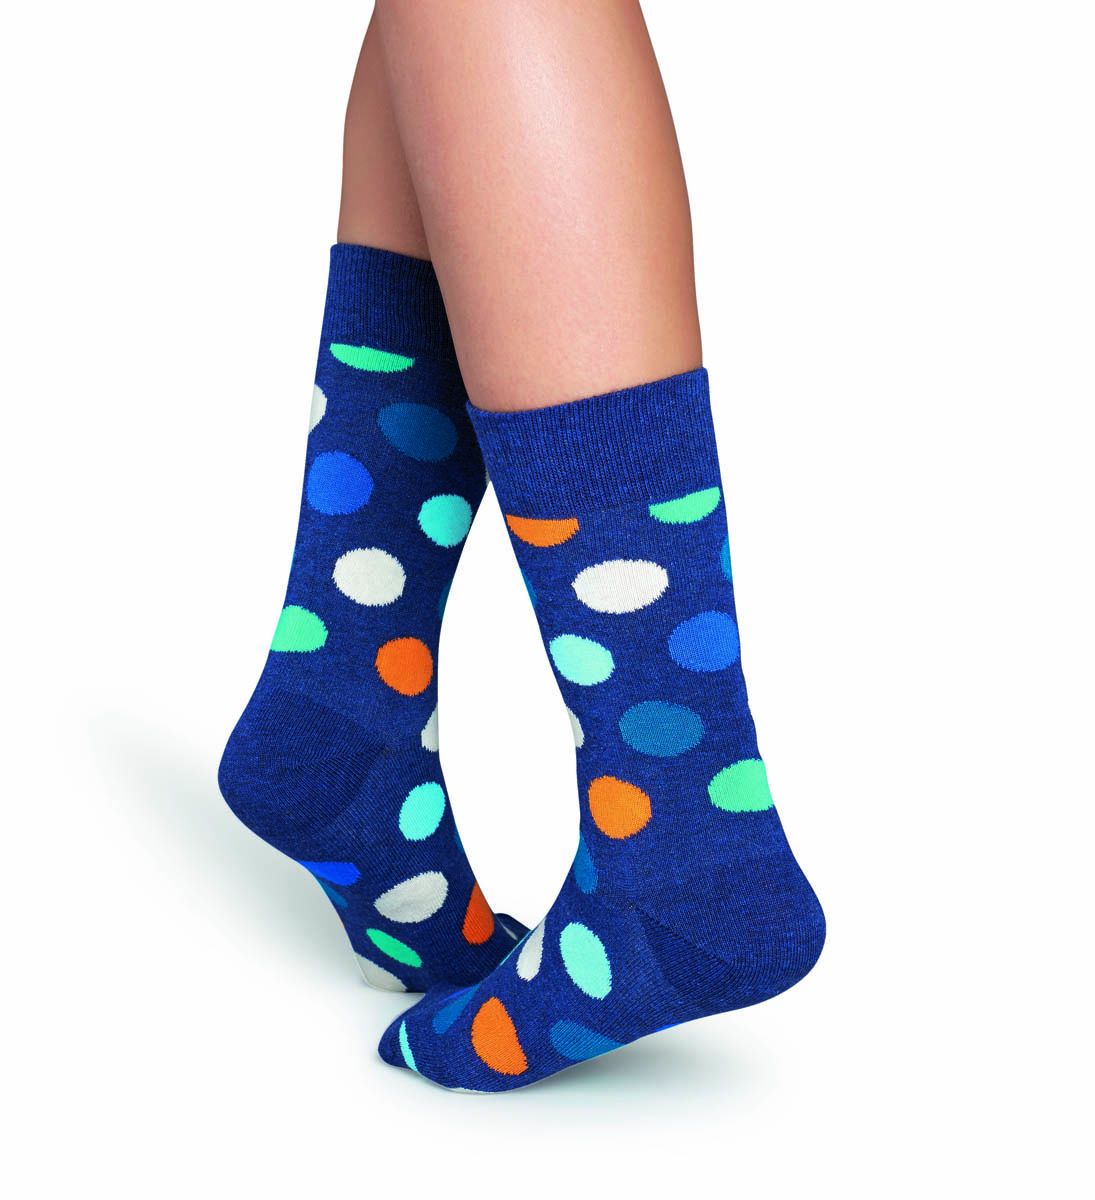 Синие носки унисекс Big Dot Sock в крупный цветной горох.